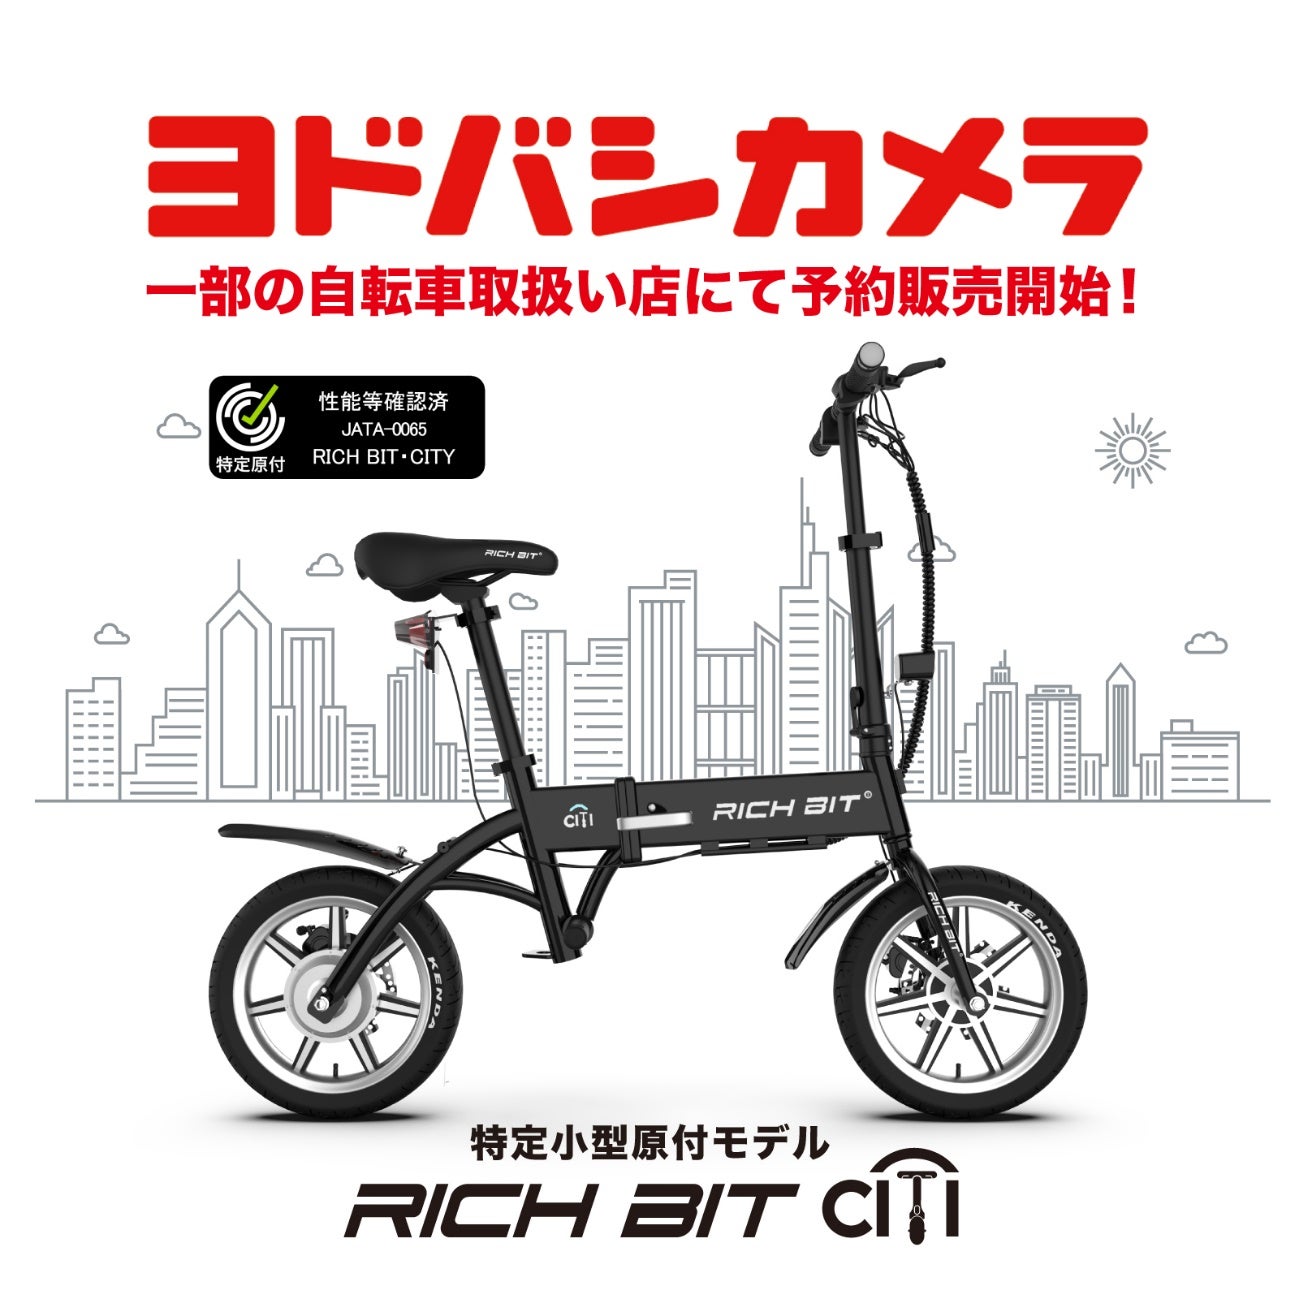 「自転車×バイクの新しい形」特定小型原動付区分の「RICHIBIT CITY」がヨドバシカメラ一部の自転車取扱い店にて販売開始。